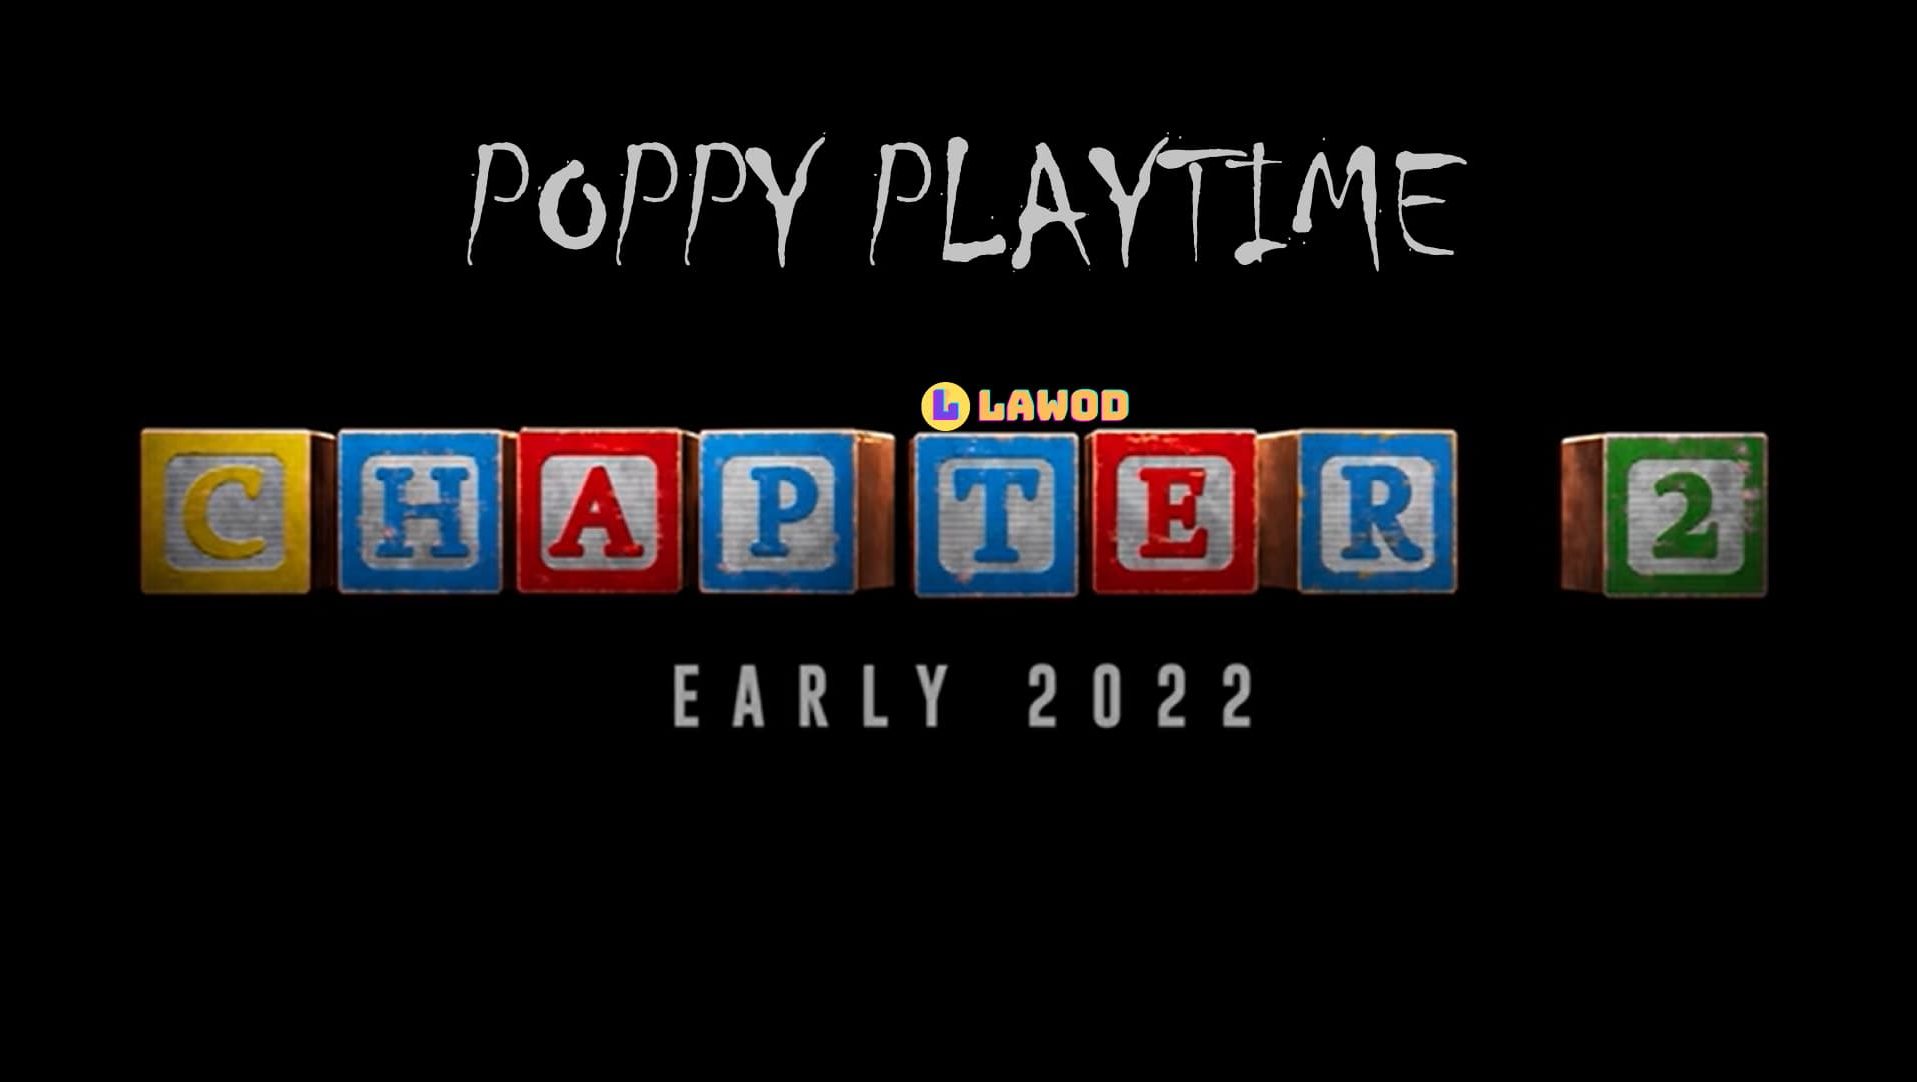 Poppy playtime глент 2 часть. Poppy Playtime 2 часть. Poppy Playtime логотип. Poppy Play time 3. Poppy Playtime надпись.